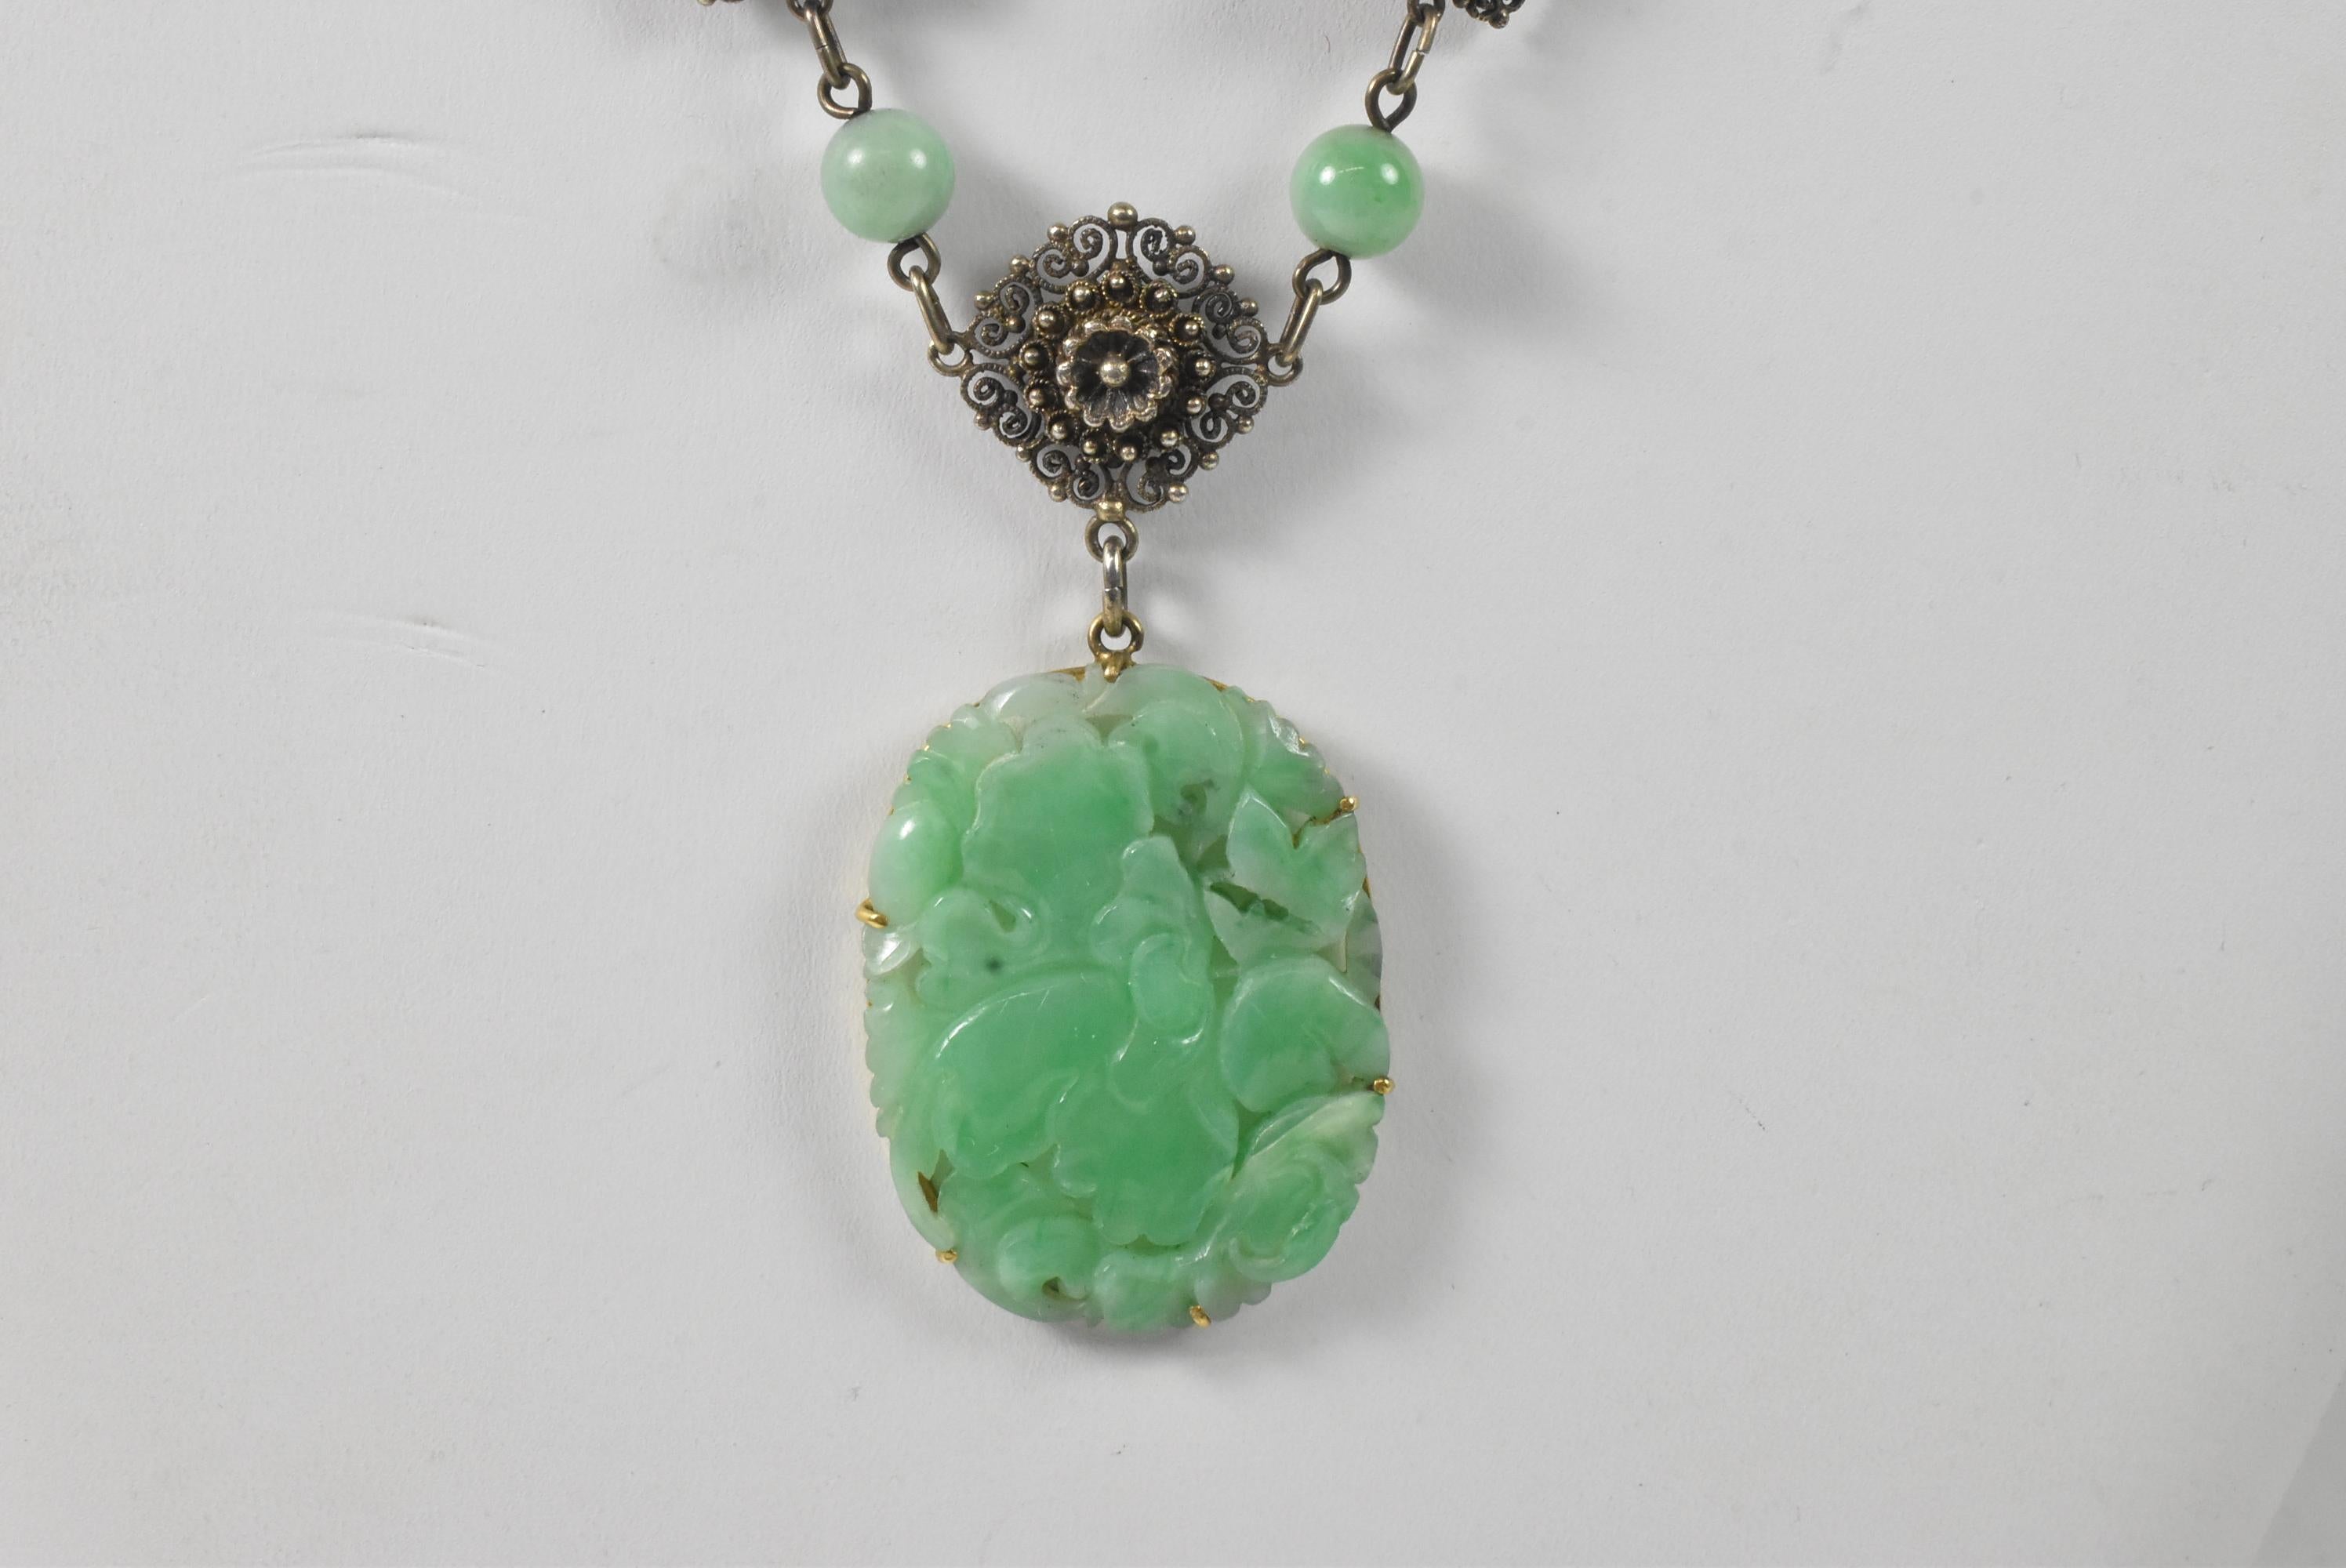 Ce magnifique collier en argent ancien est orné d'un pendentif en jade sculpté de style asiatique. La chaîne en argent massif, faite à la main, comporte des maillons inhabituels et des perles de jade. Le pendentif mesure 38 mm x 28 mm et la chaîne